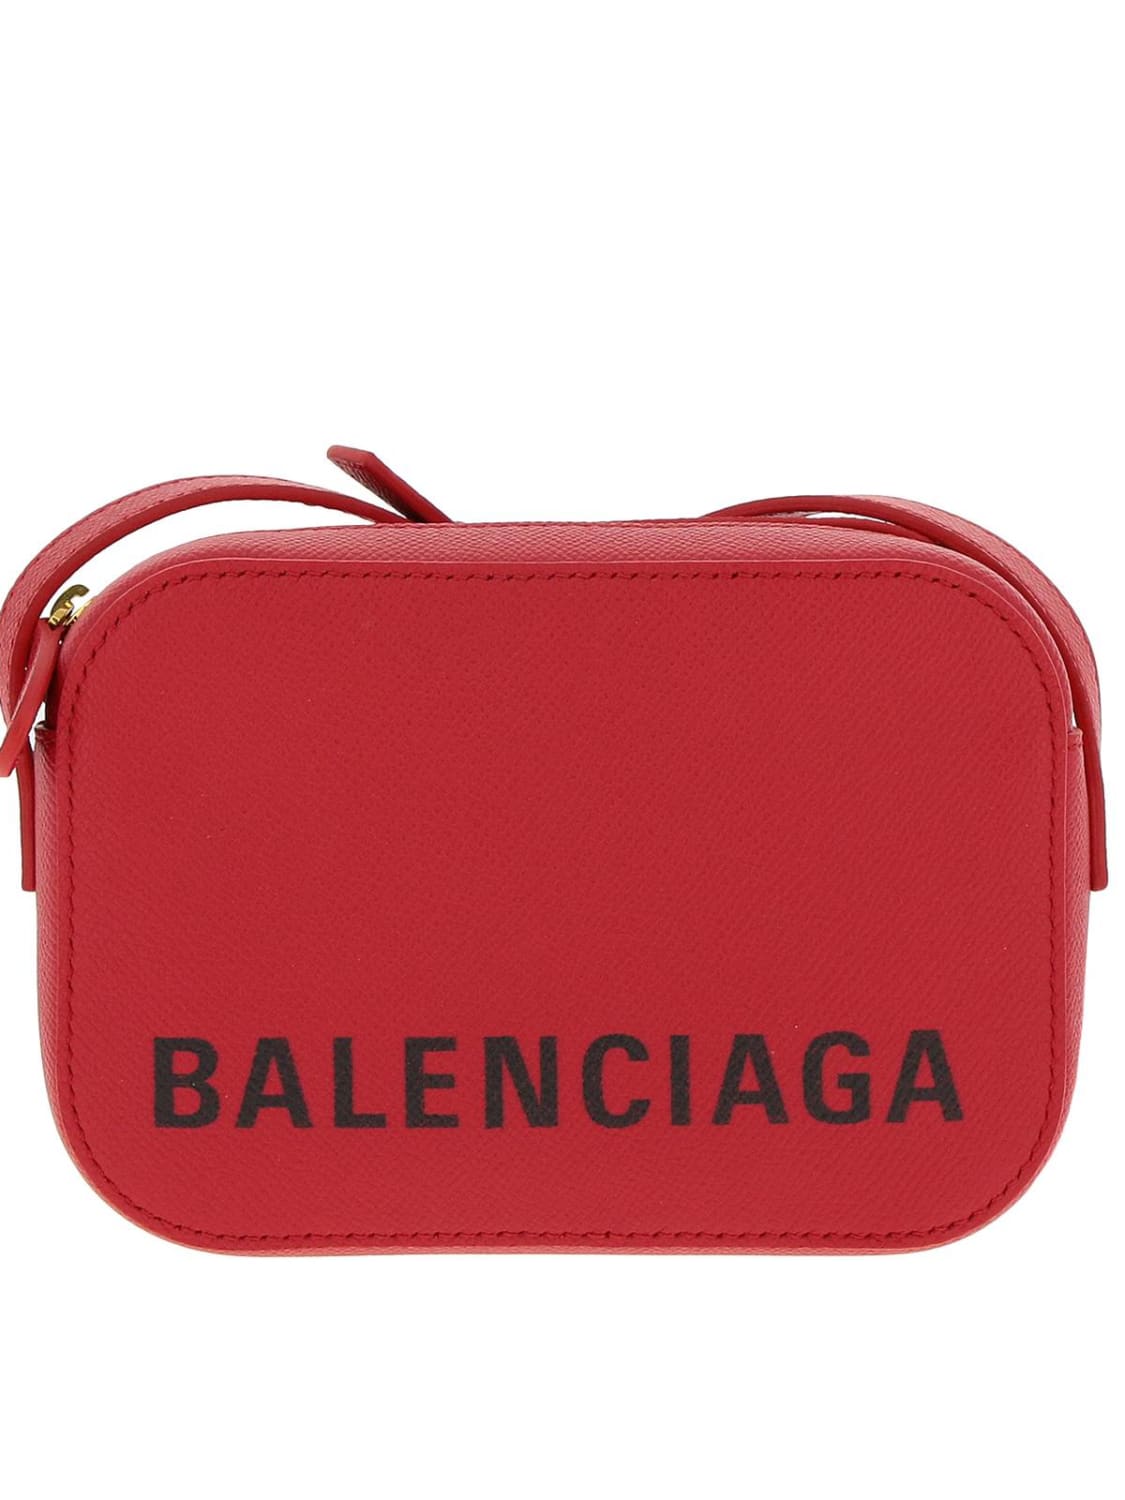 BALENCIAGA Outlet: Shoulder bag women - Red | BALENCIAGA mini bag ...